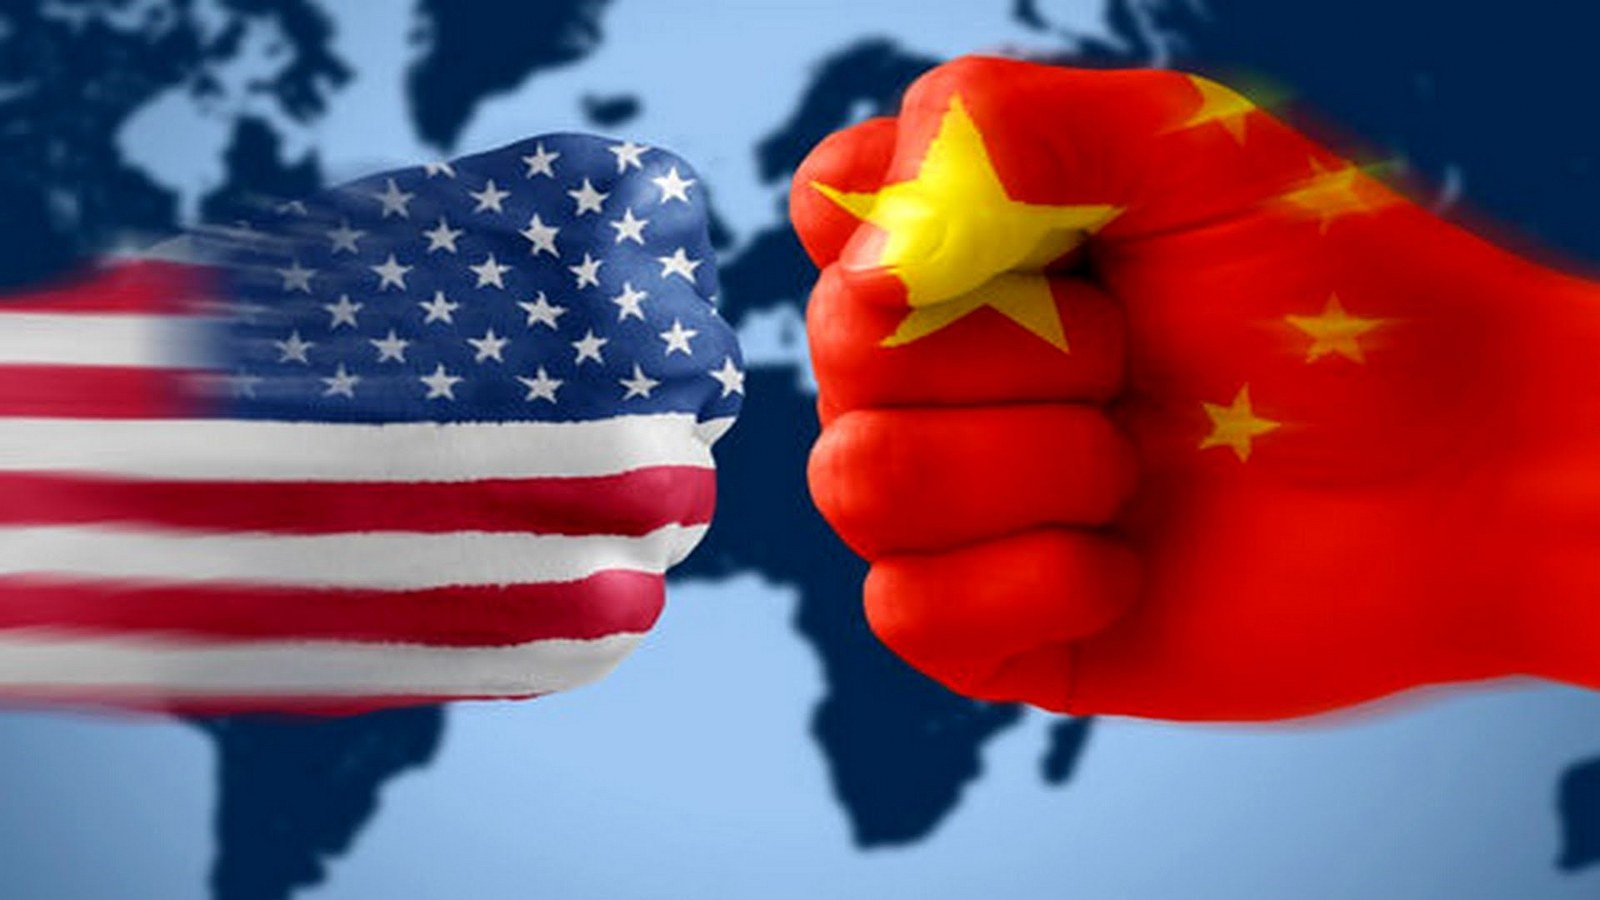 ABD'den, Çinli teknoloji şirketlerine yeni yasaklama geldi